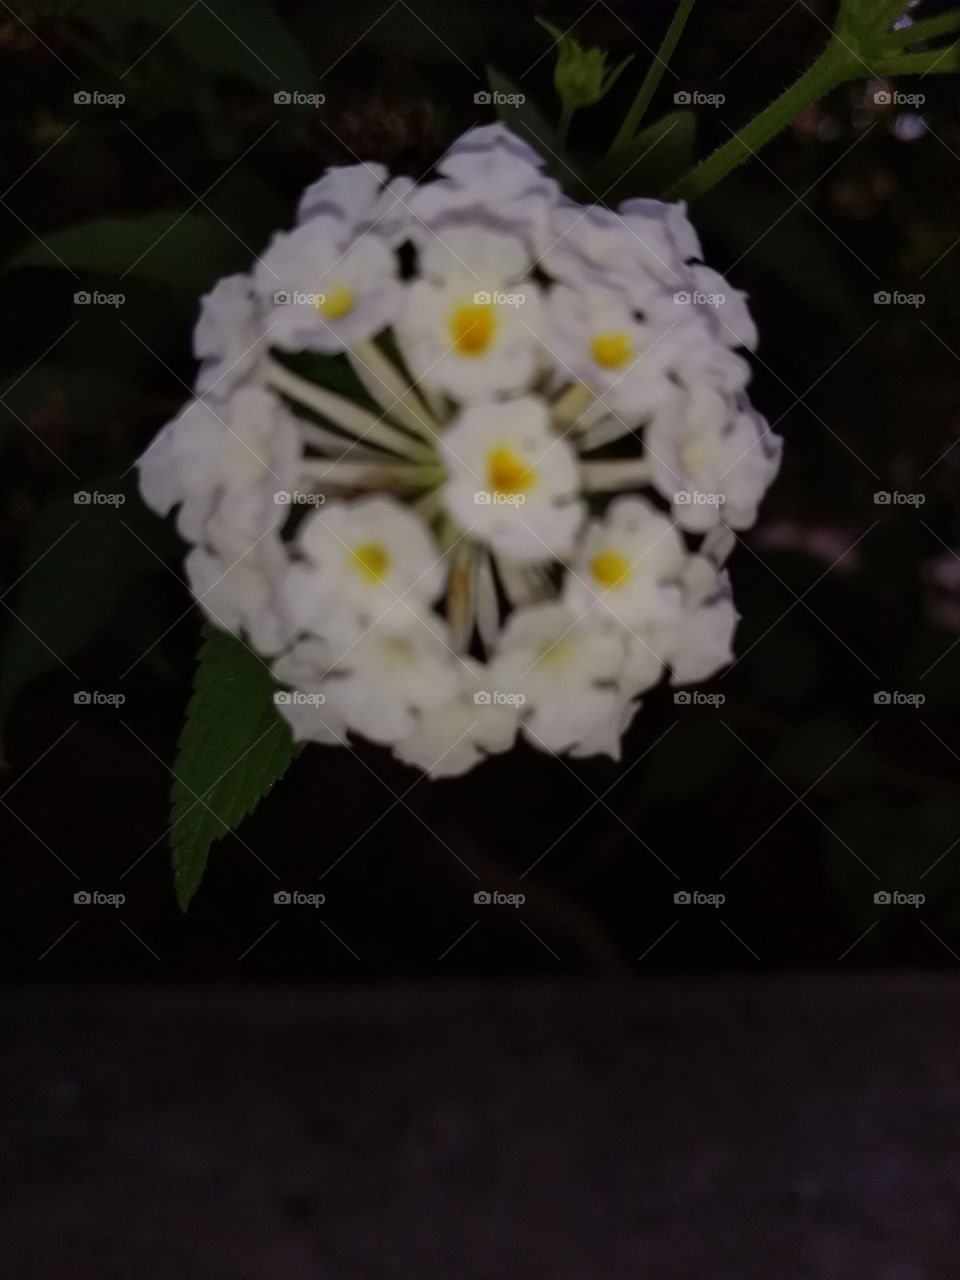 aquí una flor